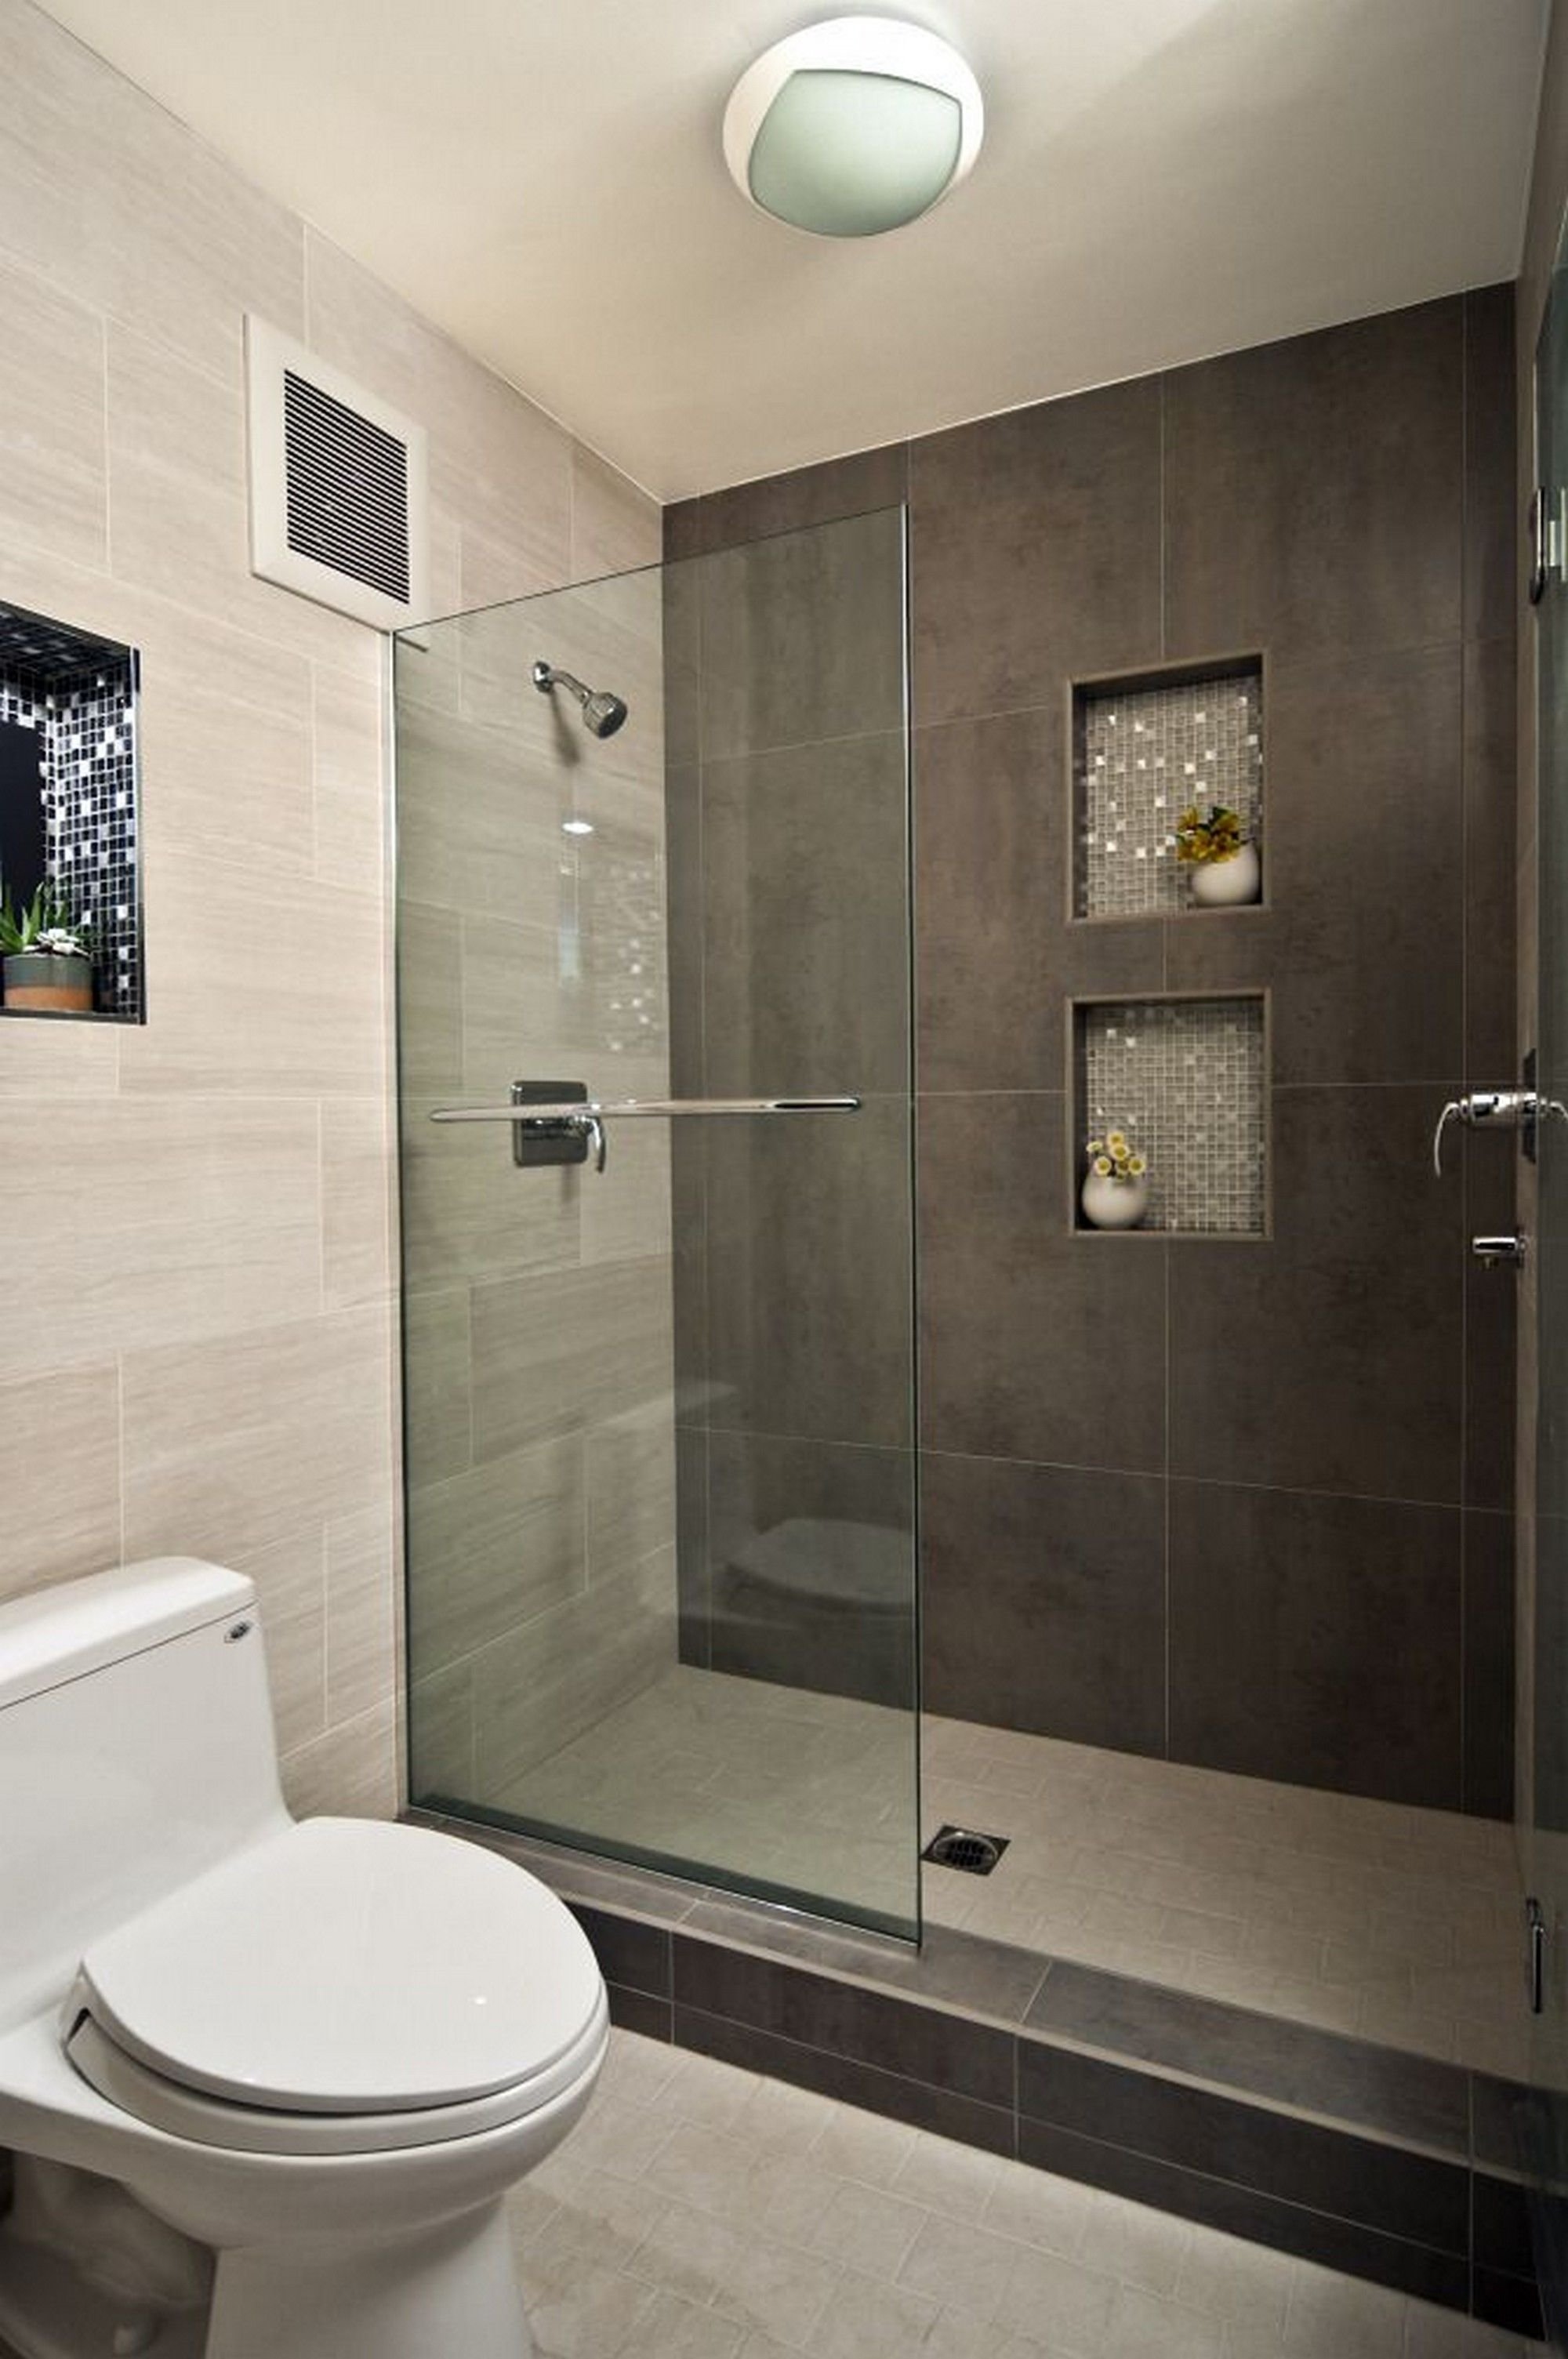 10 Wonderful Walk In Shower Tile Ideas modern bathroom design ideas with walk in shower small bathroom 4 2022